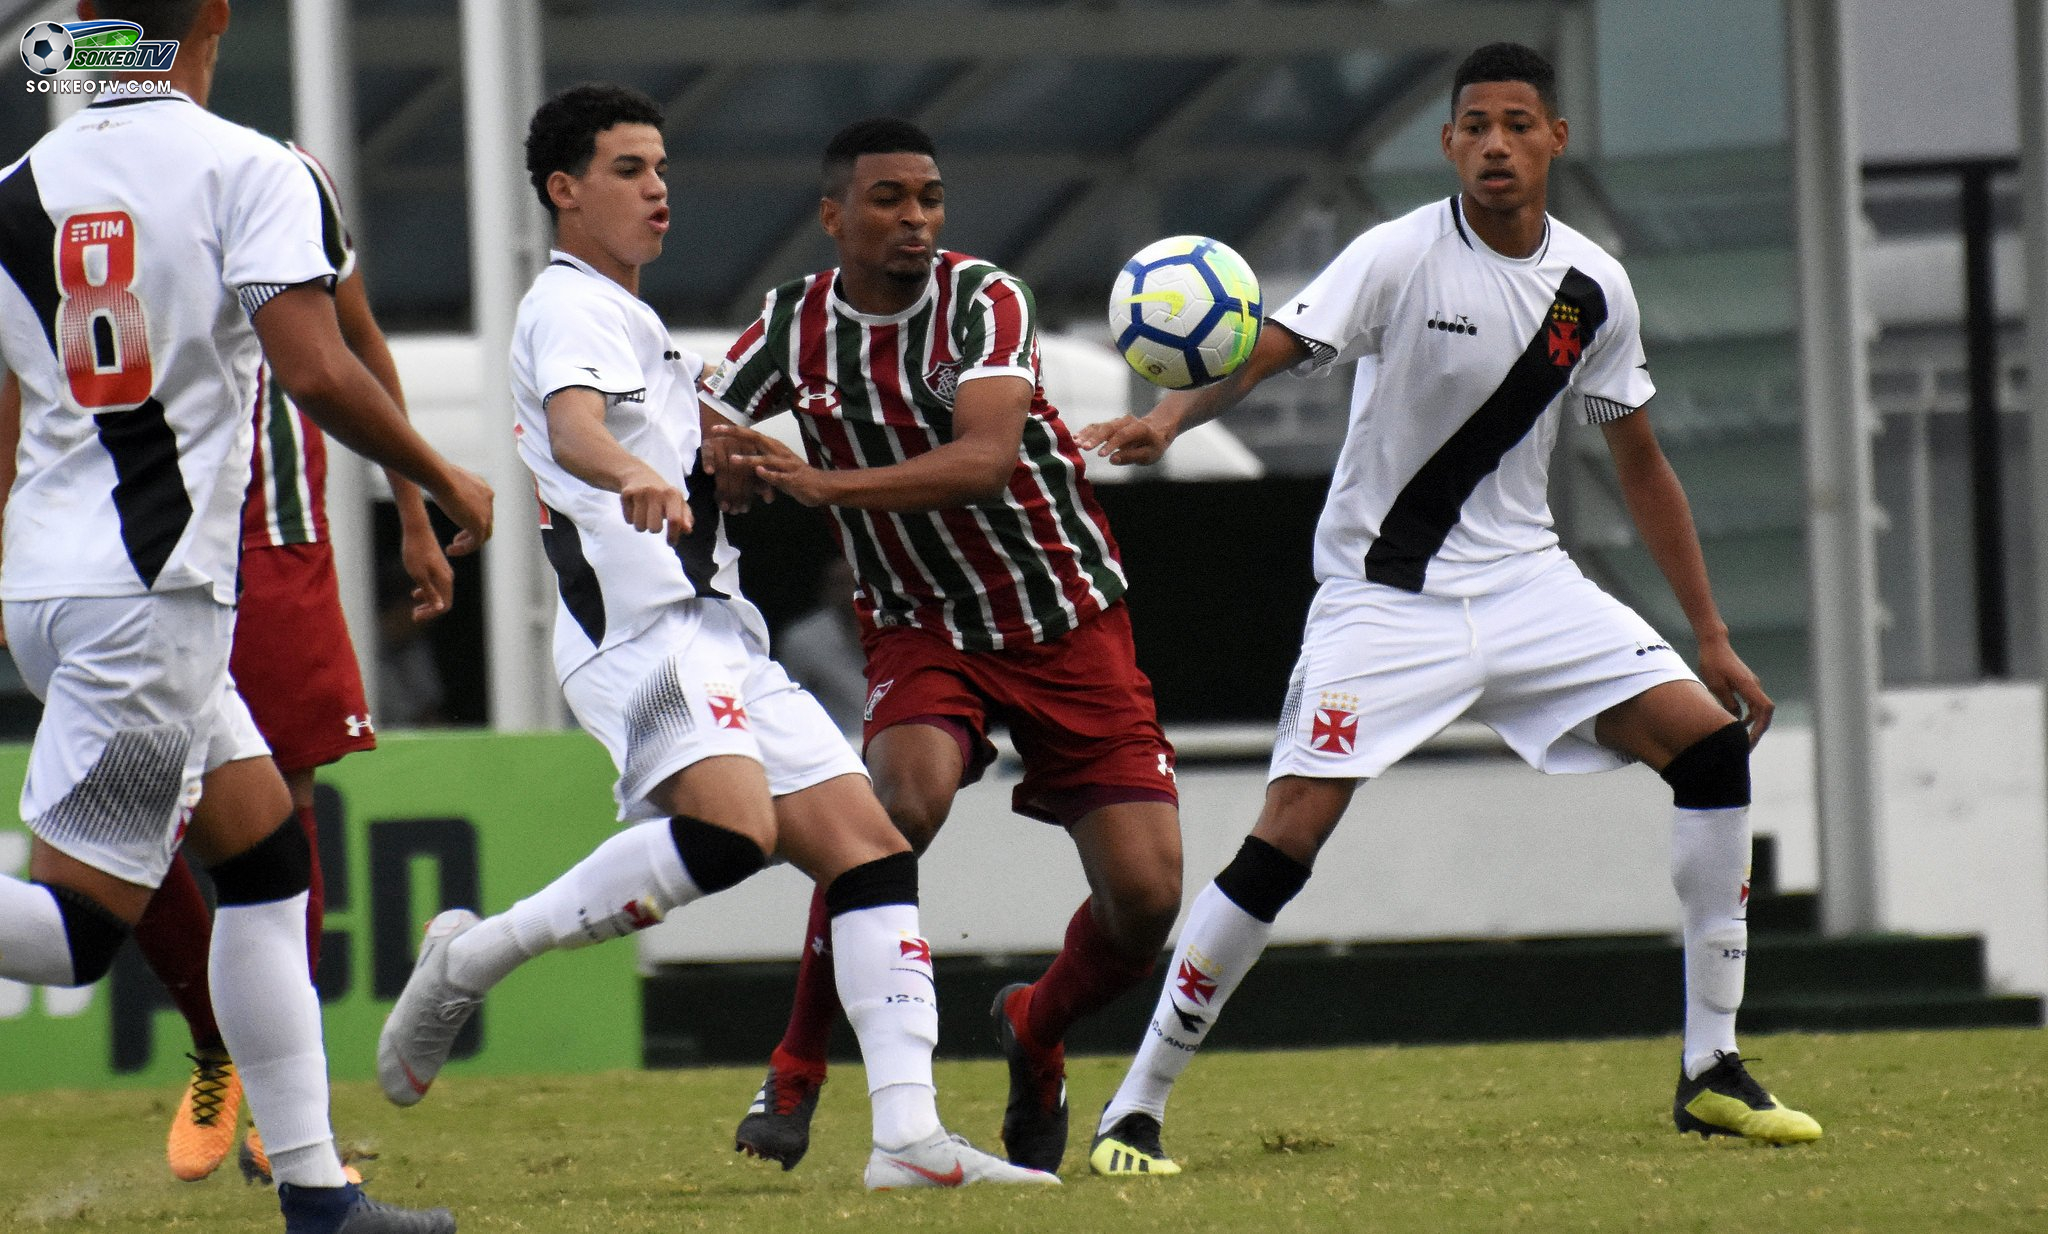 Soi kèo, nhận định Vasco da Gama vs Fluminense 21h00 ngày 20/07/2019